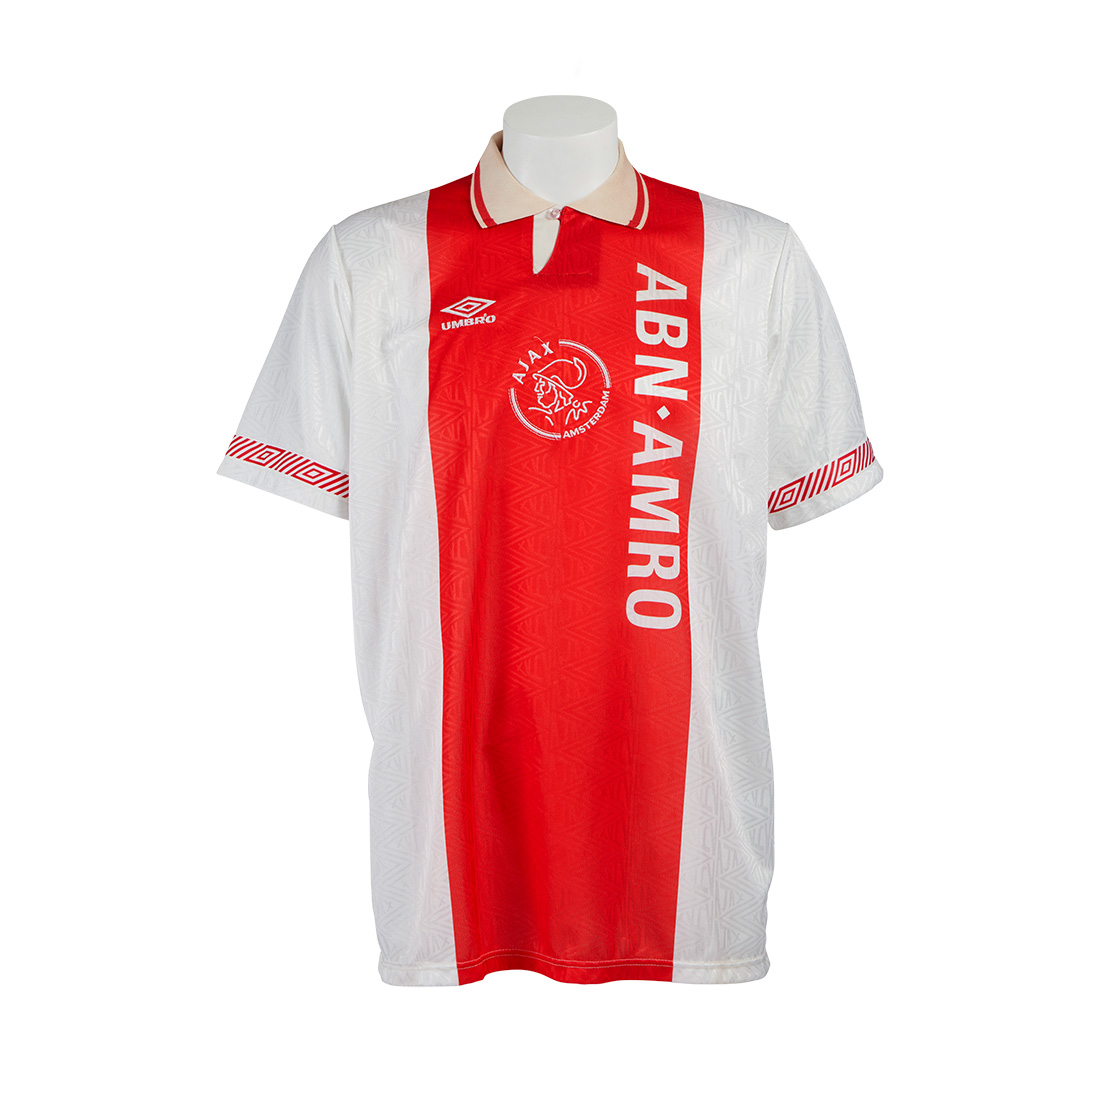 Het spijt me Afleiding Ontaarden Het Ajax Shirt - Kick uitgevers